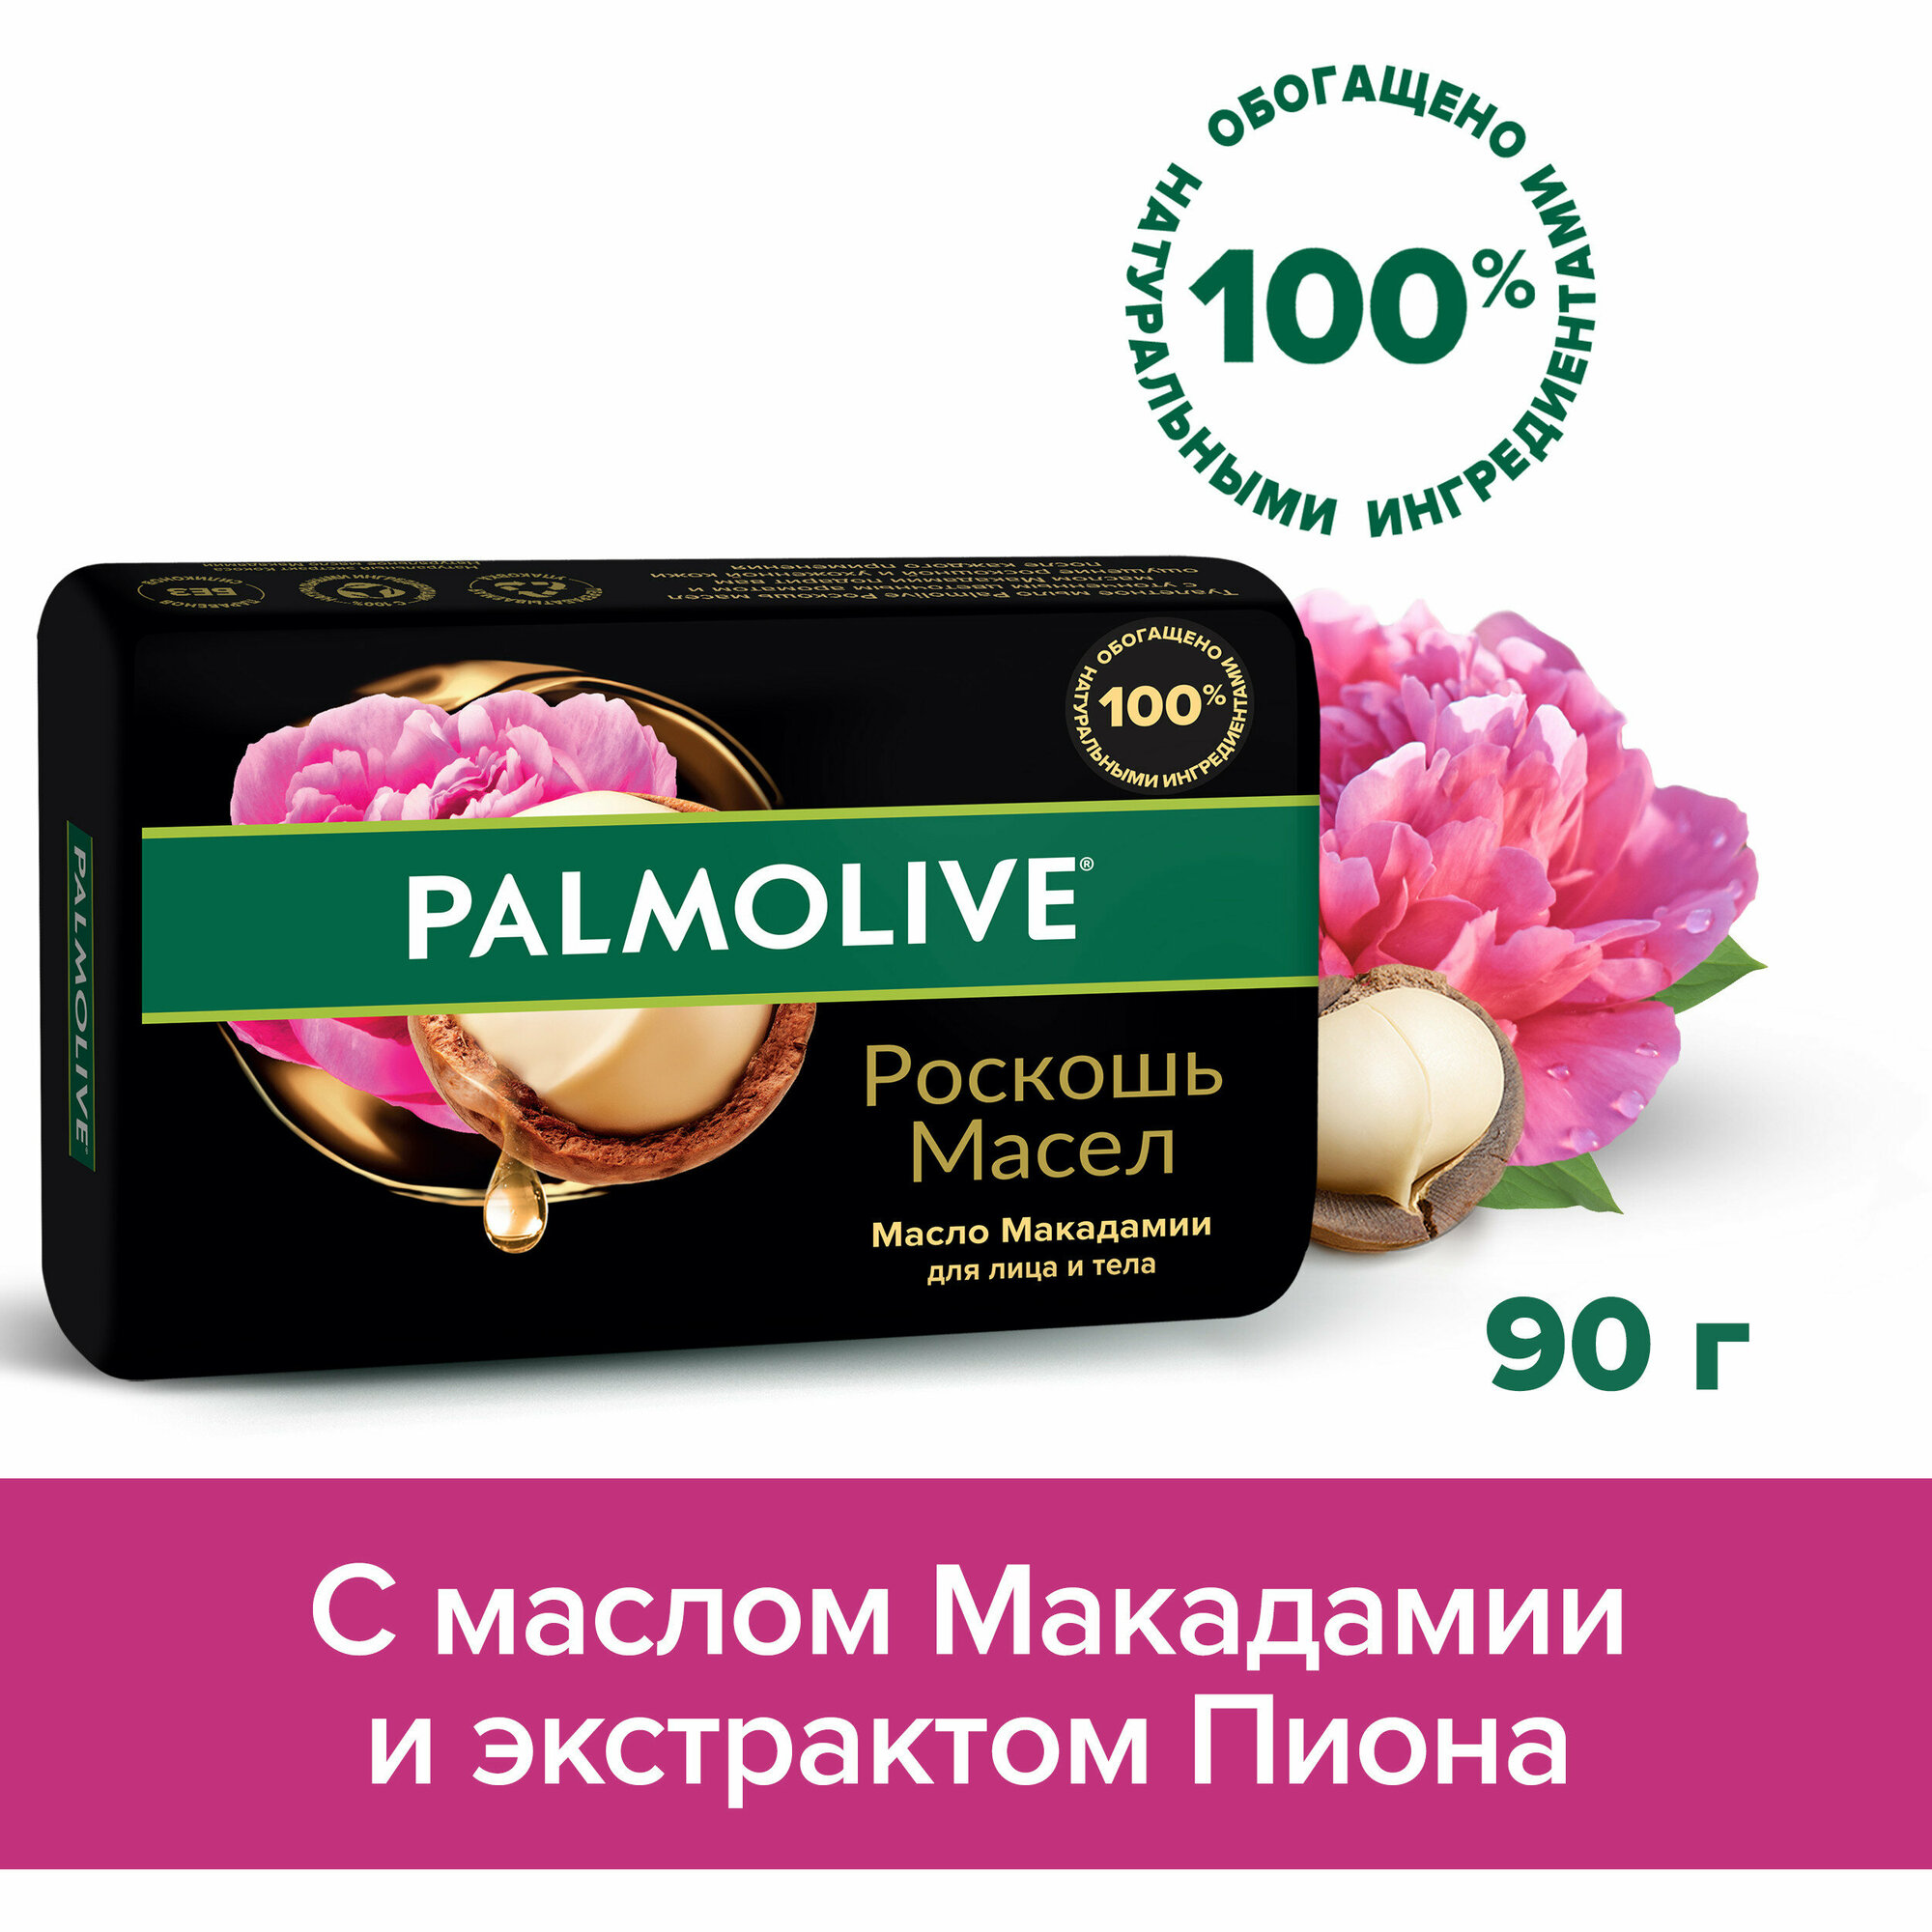 Мыло туалетное твердое Palmolive Роскошь Масел с маслом макадамии, 90 г